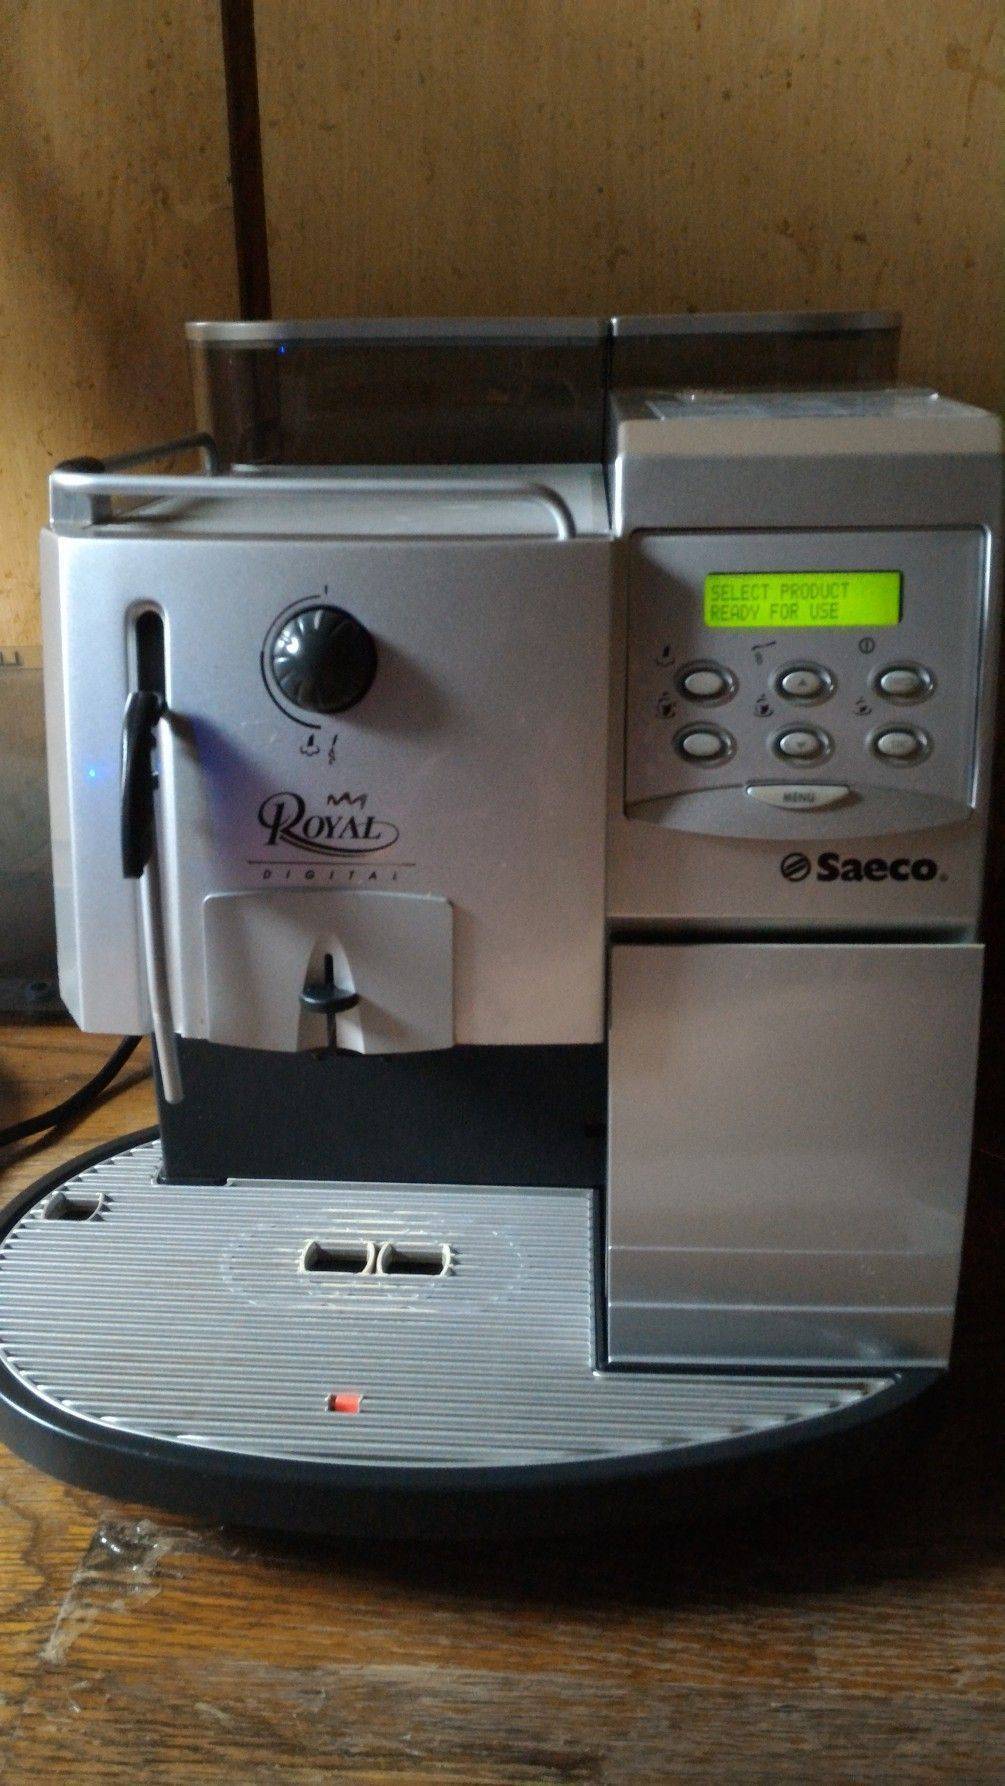 saeco  ROyal全自動咖啡機(ˊ營業.家庭.中古機)歡迎來電詢問  已賣出